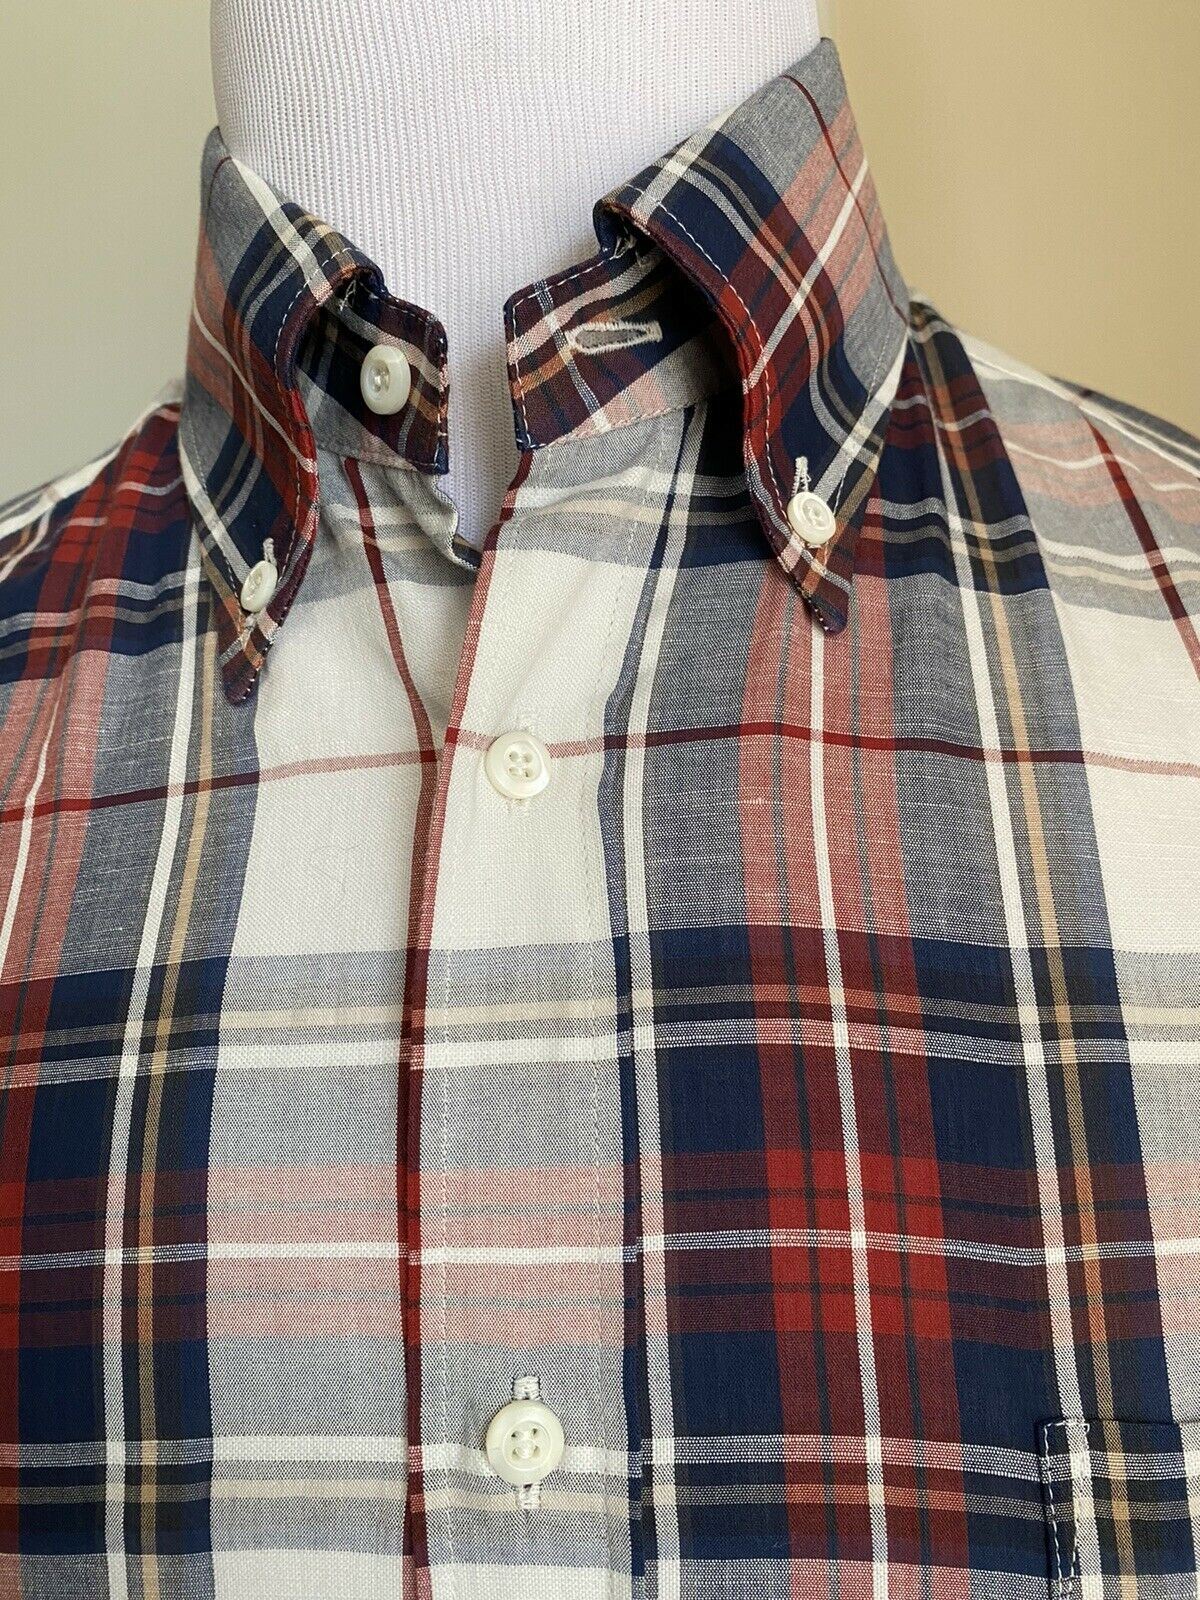 NWT $895 Brunello Cucinelli Мужская рубашка из льна/хлопка базового кроя бежевого/темно-синего цвета M Италия